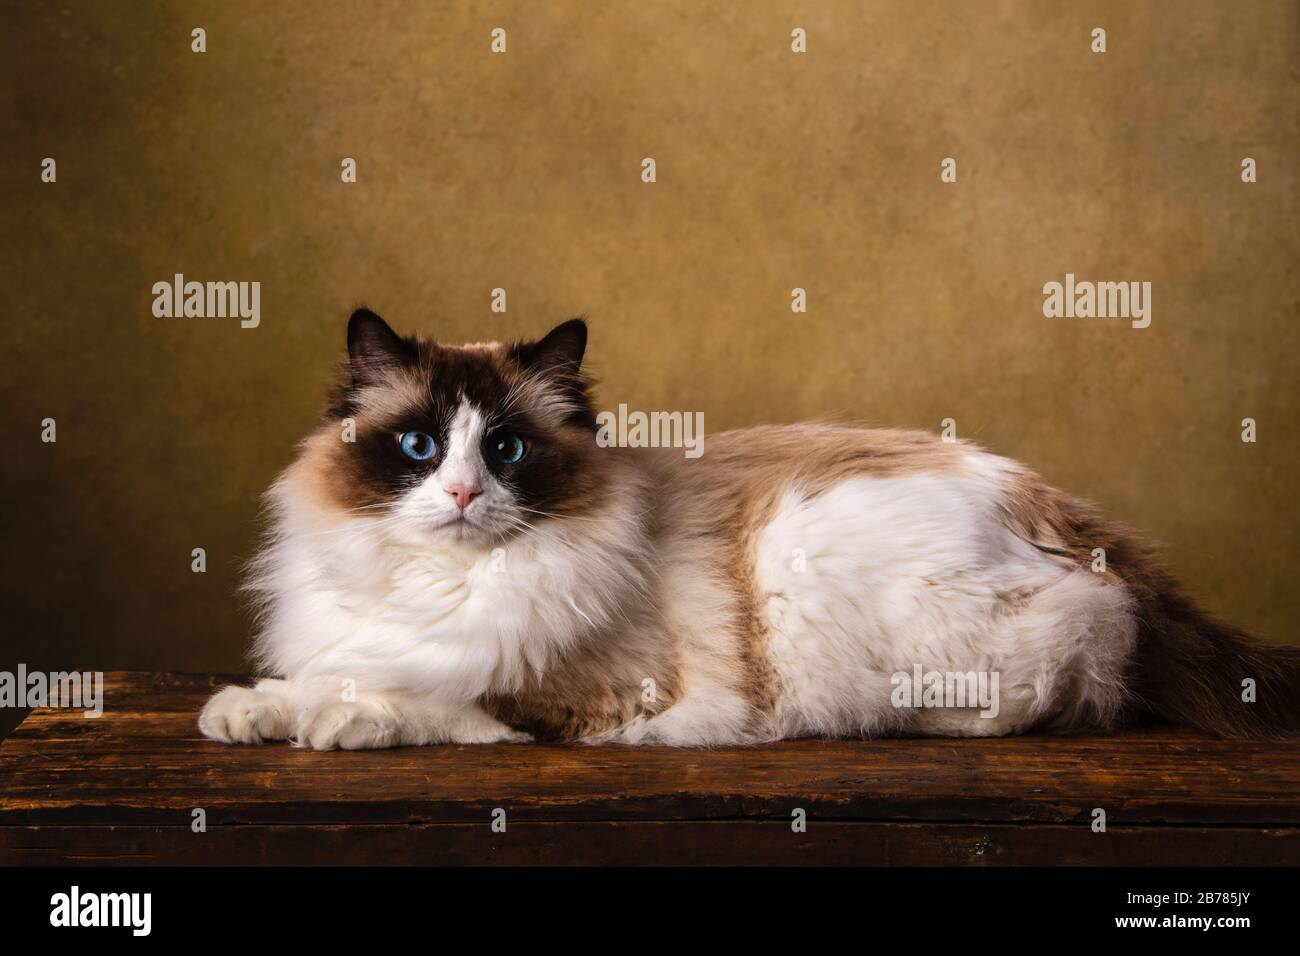 Eine schöne reinrassige bicolore Ragdoll-Katze, braun und weiß mit blauen Augen. Kunstporträt, im Studio mit braunem Vignettenhintergrund gedreht. Die cu Stockfoto